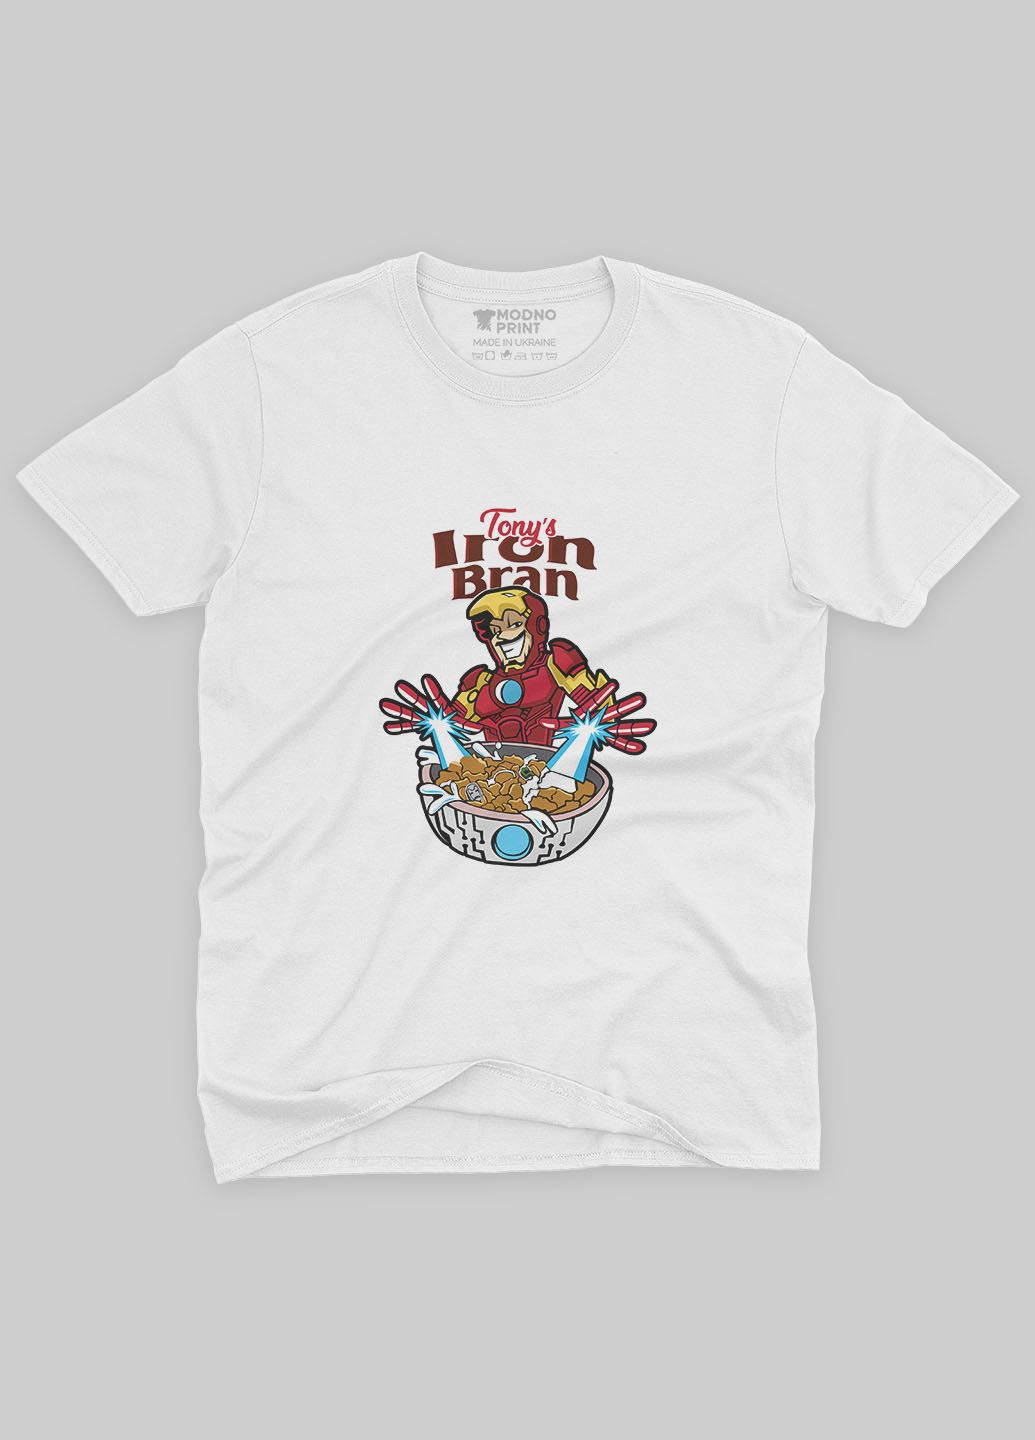 Біла демісезонна футболка для хлопчика з принтом супергероя - залізна людина (ts001-1-whi-006-016-013-b) Modno